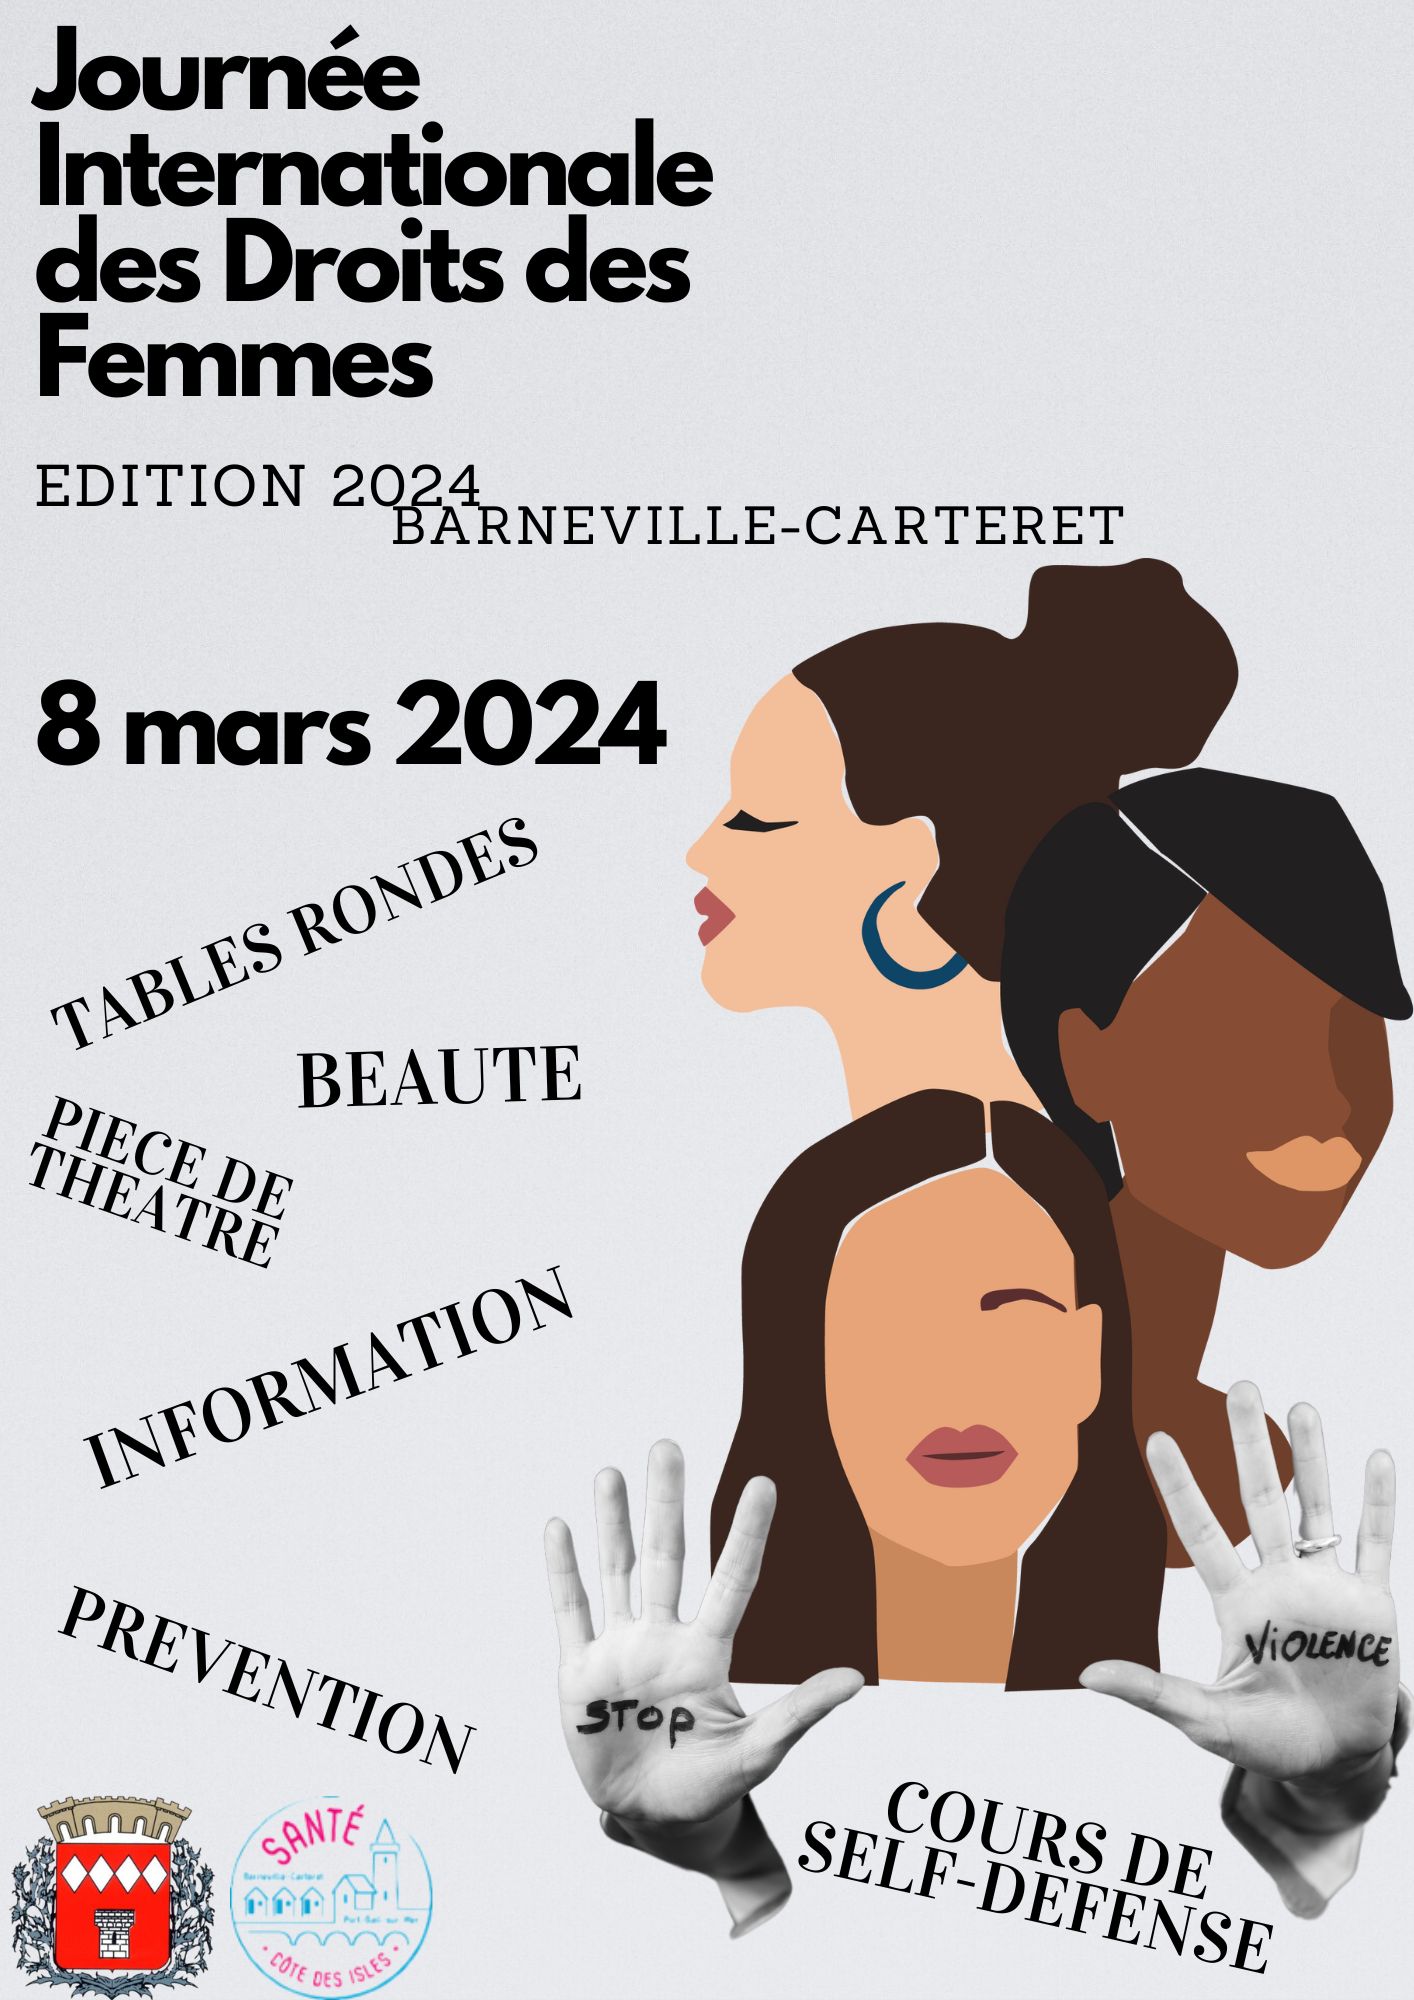 JOURNEE INTERNATIONALE DES DROITS DES FEMMES - Vendredi 8 mars 2024